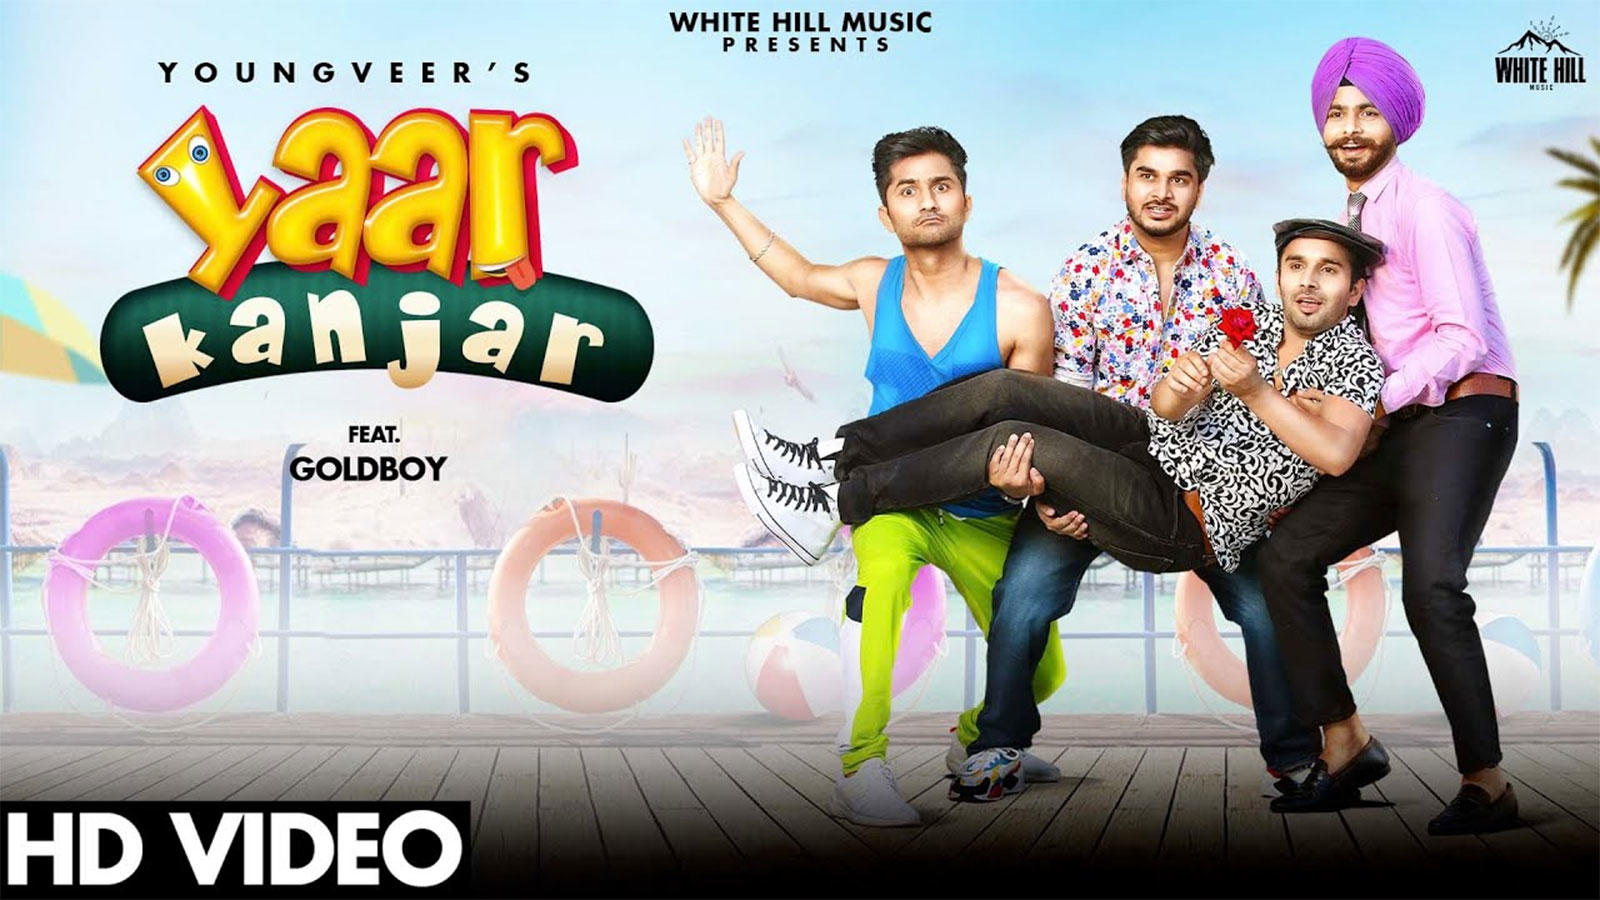 Punjabi Gana New Video Songs Geet 2020: Latest Punjabi Song 'Yaar Kanjar'  Sung by Youngveer